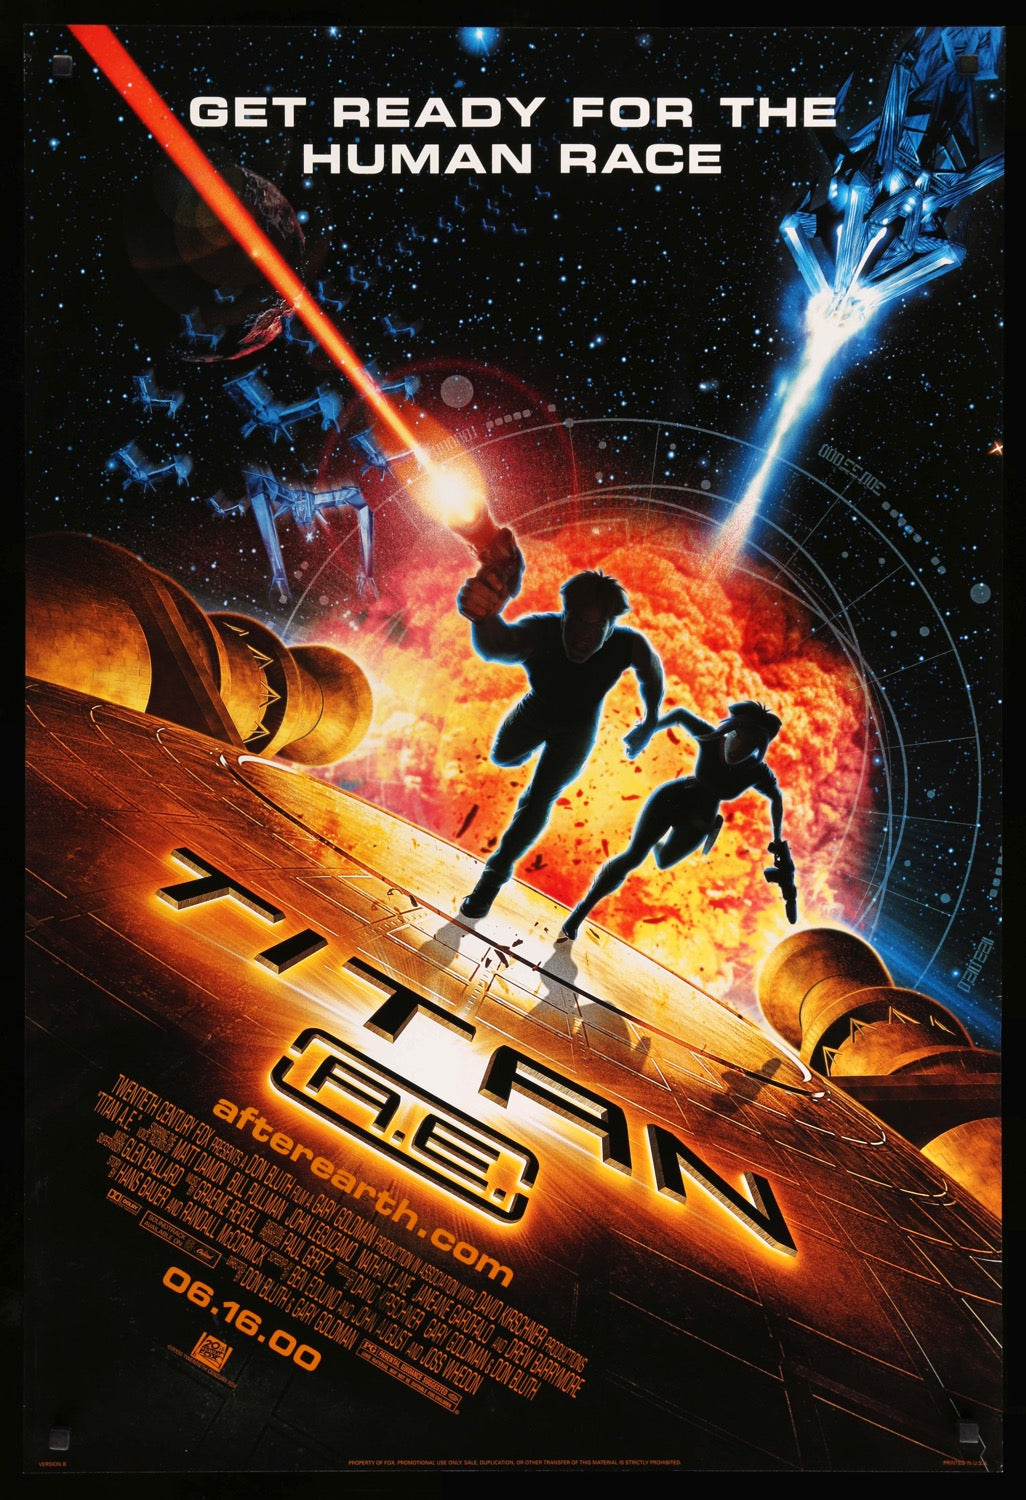 Titan A.E. (2000) original movie poster for sale at Original Film Art